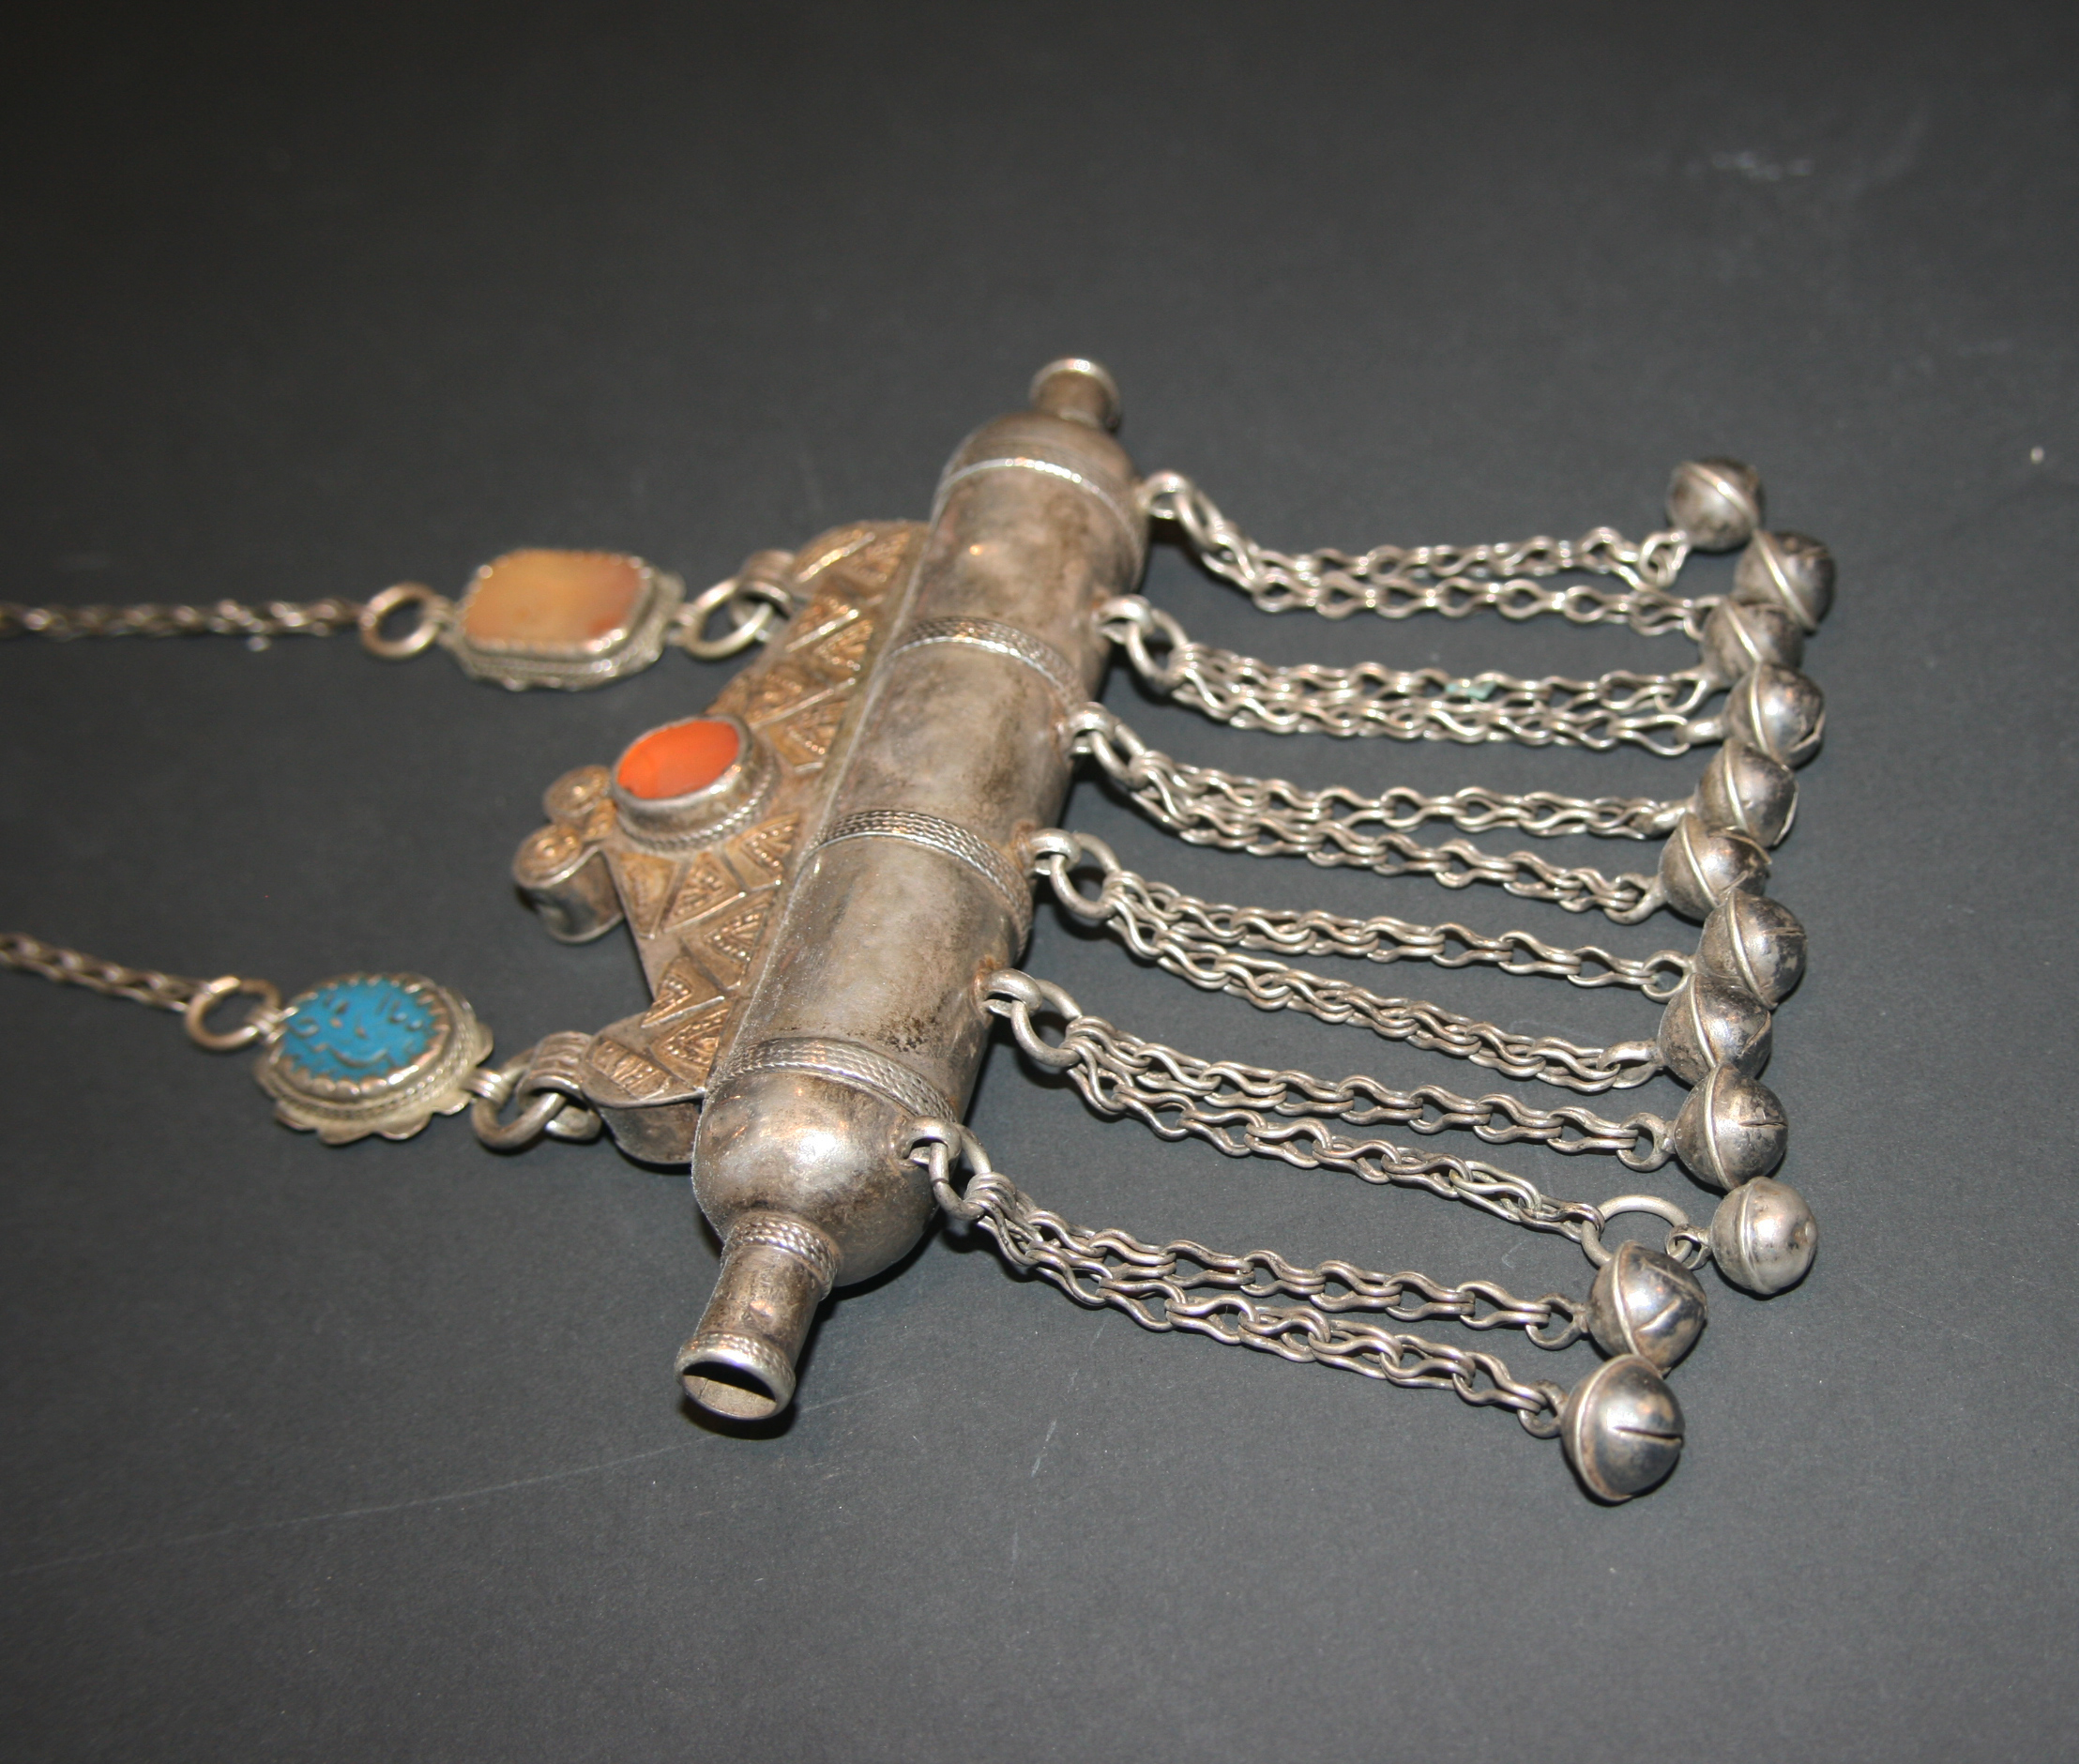 Old Yamood amulet pendant